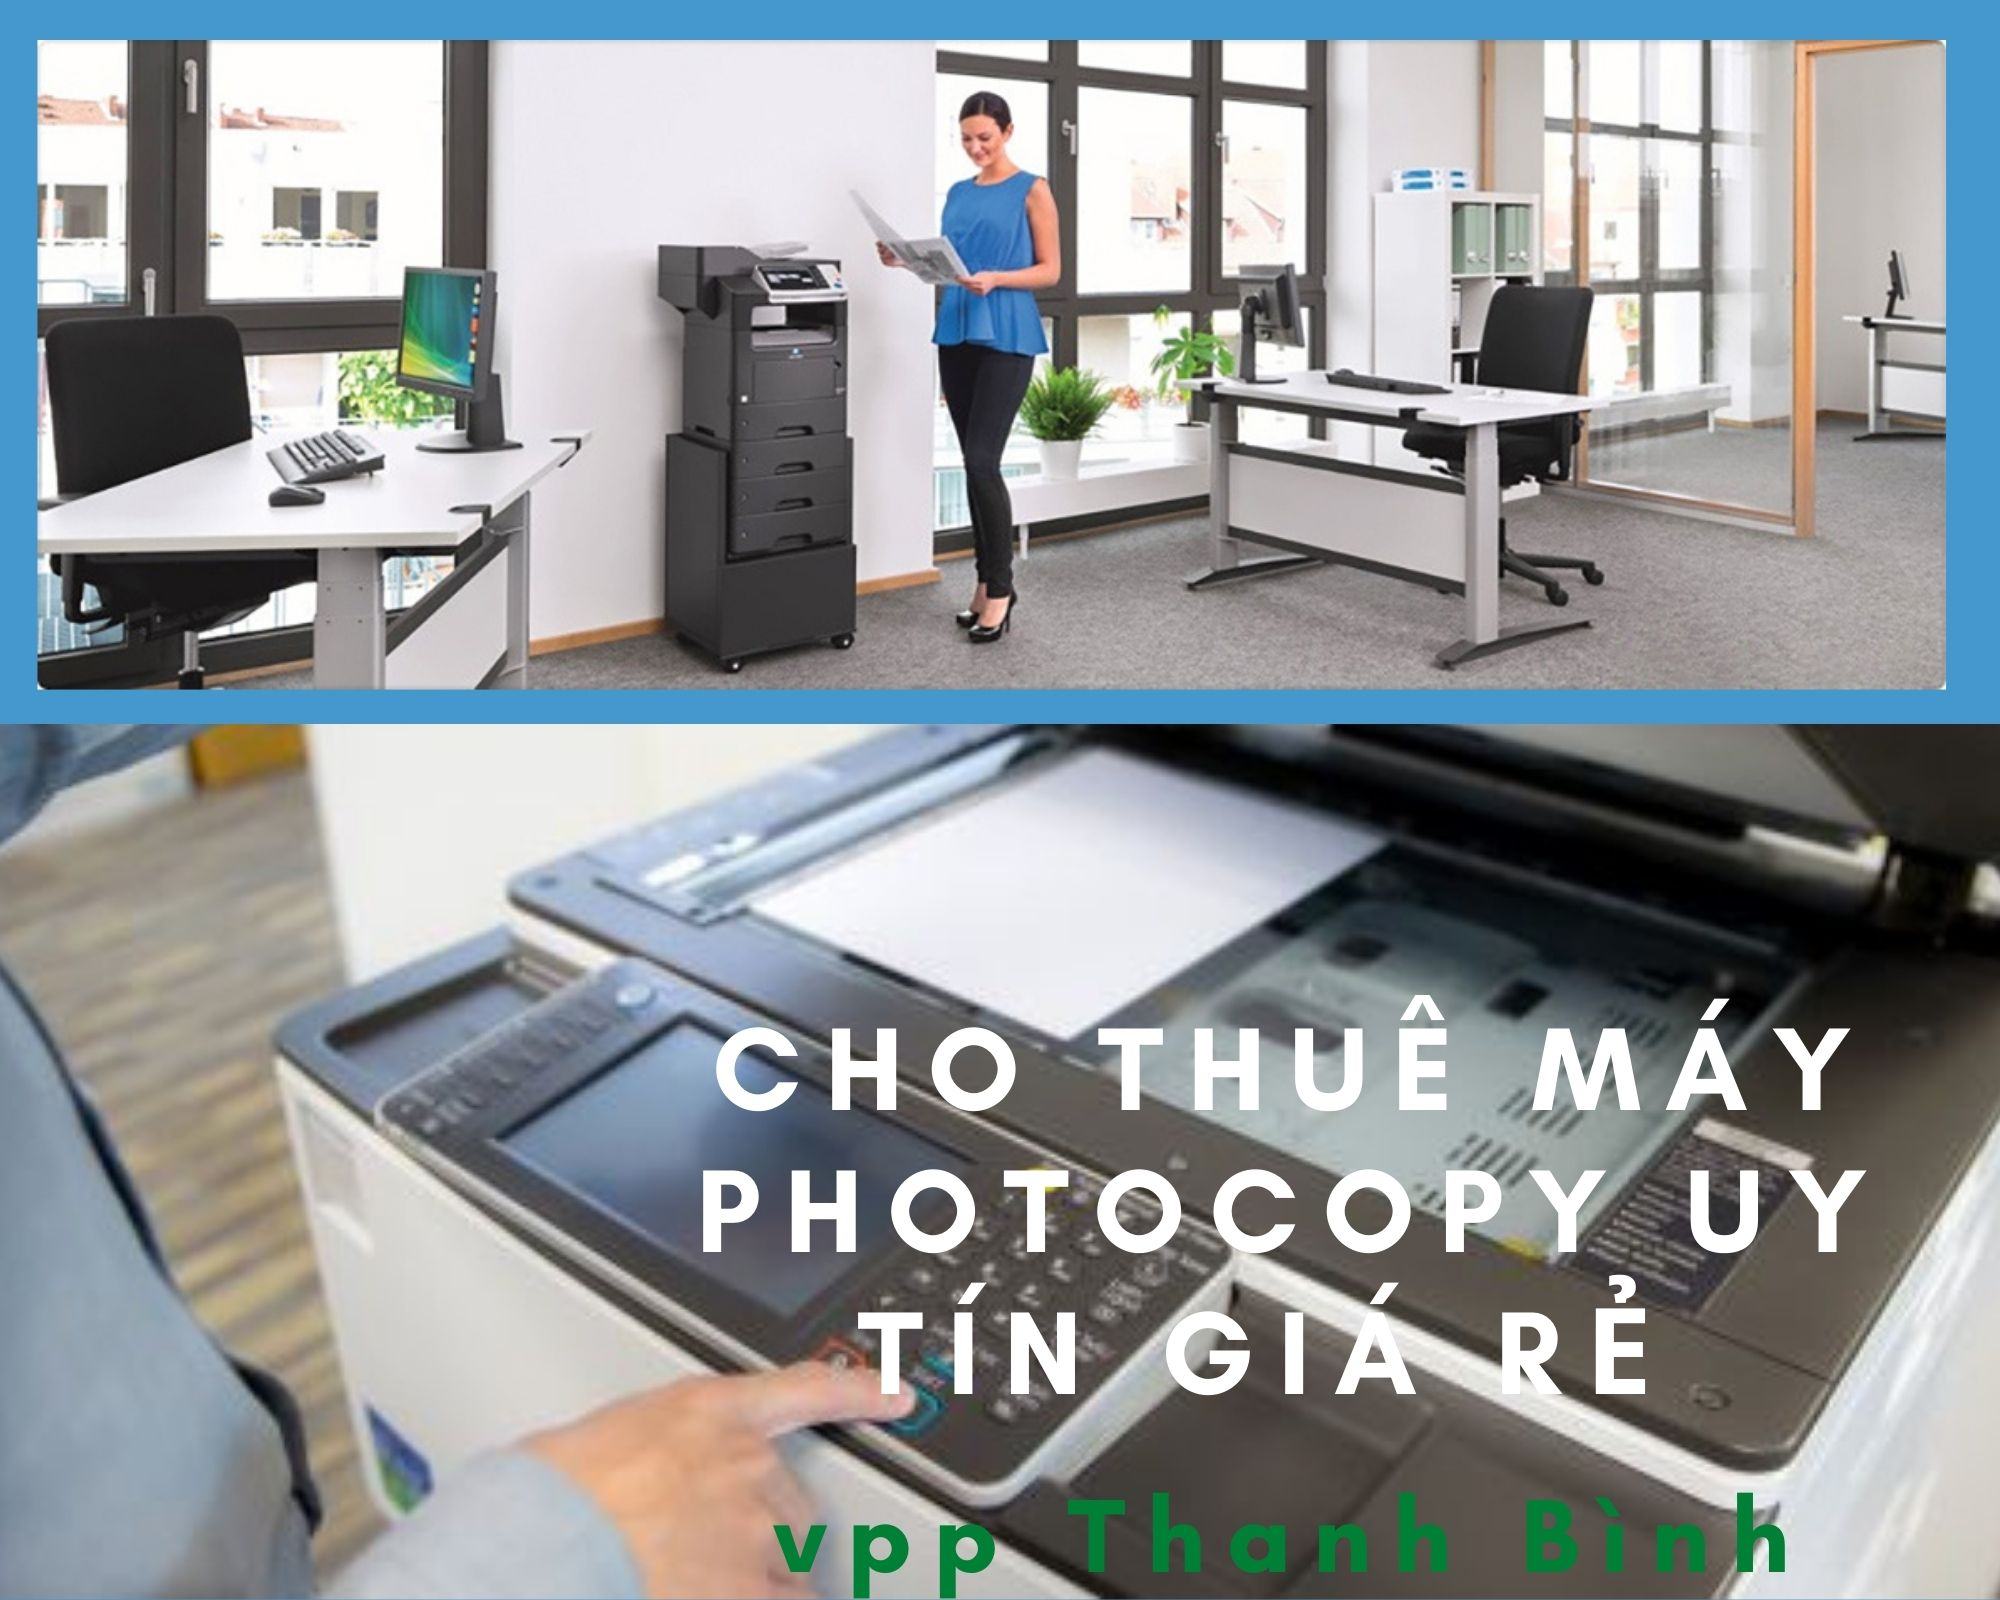 Dịch vụ cho thuê máy photocopy tại Hà Đông -Hà Nội từ 500k